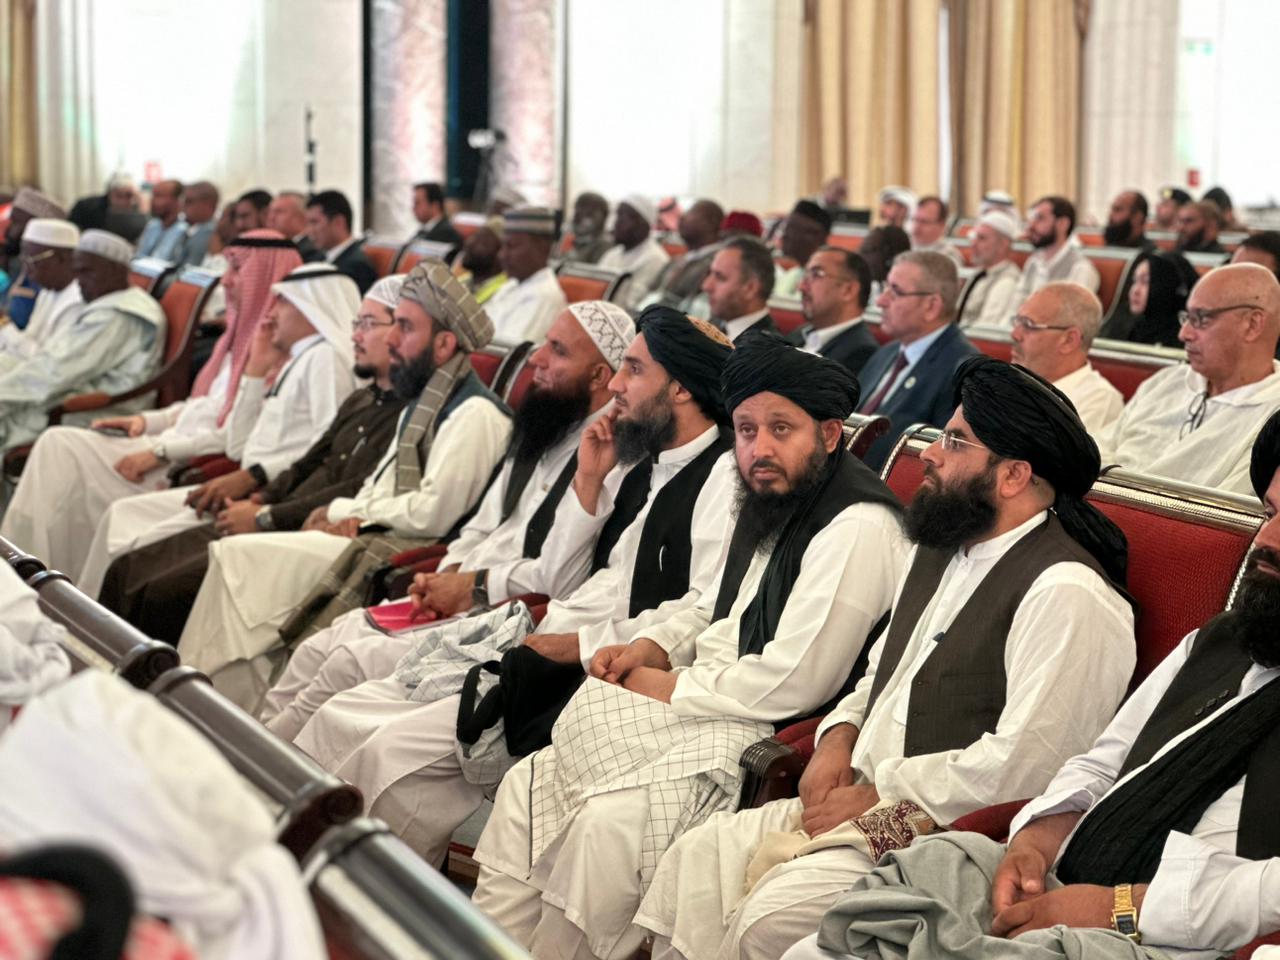 اشتراک وزیر ارشاد، حج و اوقاف در کنفراس بزرگ حج که در شهر جده عربستان سعودی دایر گردیده بود